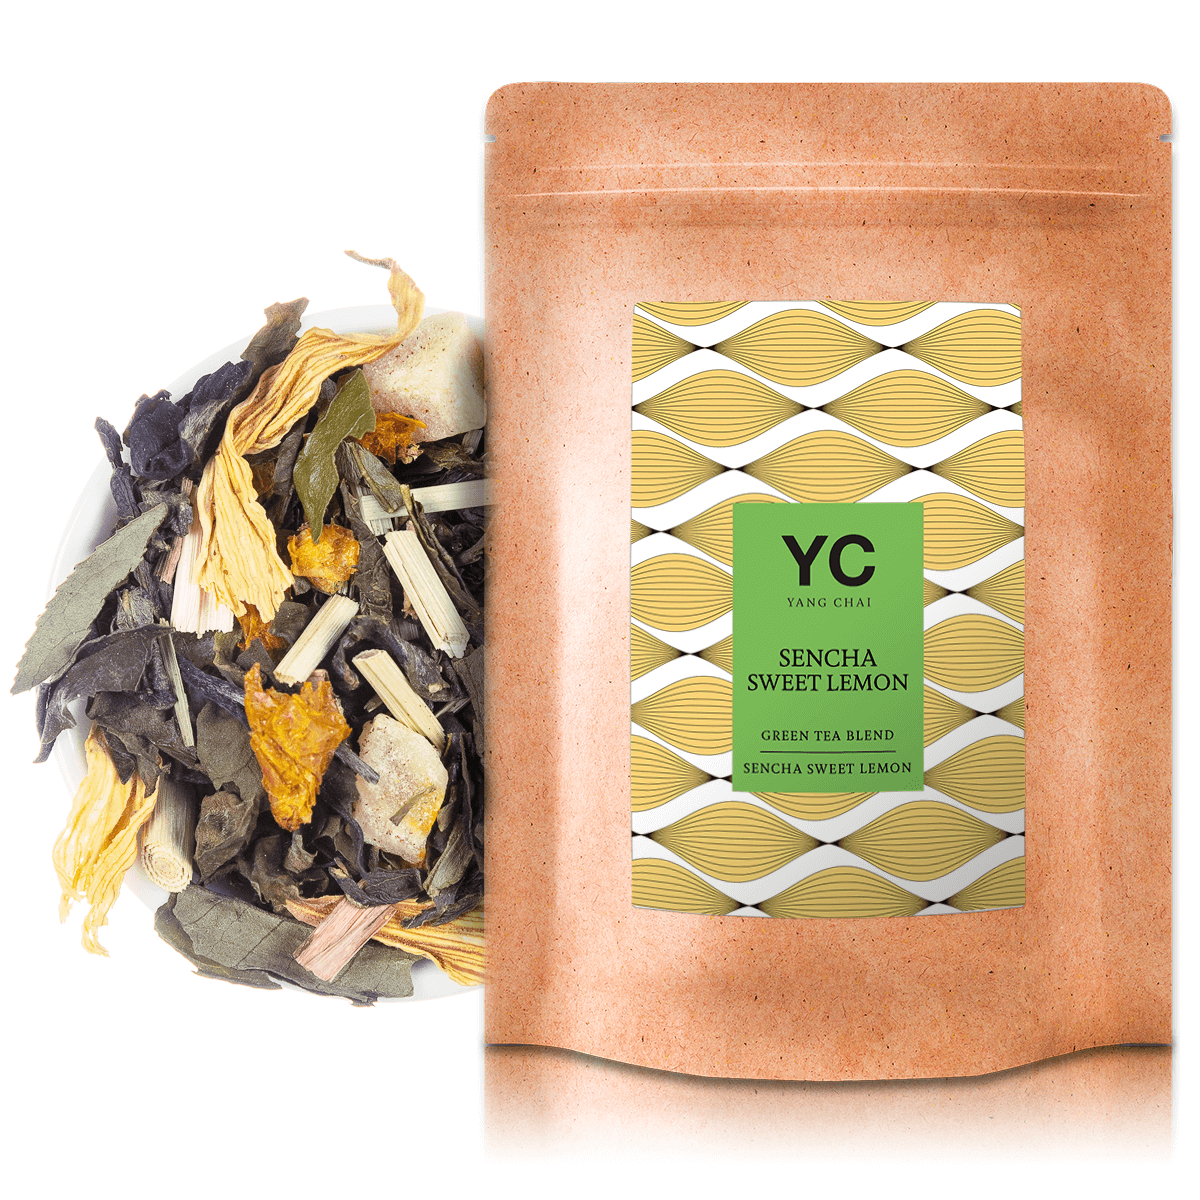 YC Yang Chai Sencha Grüner Tee 